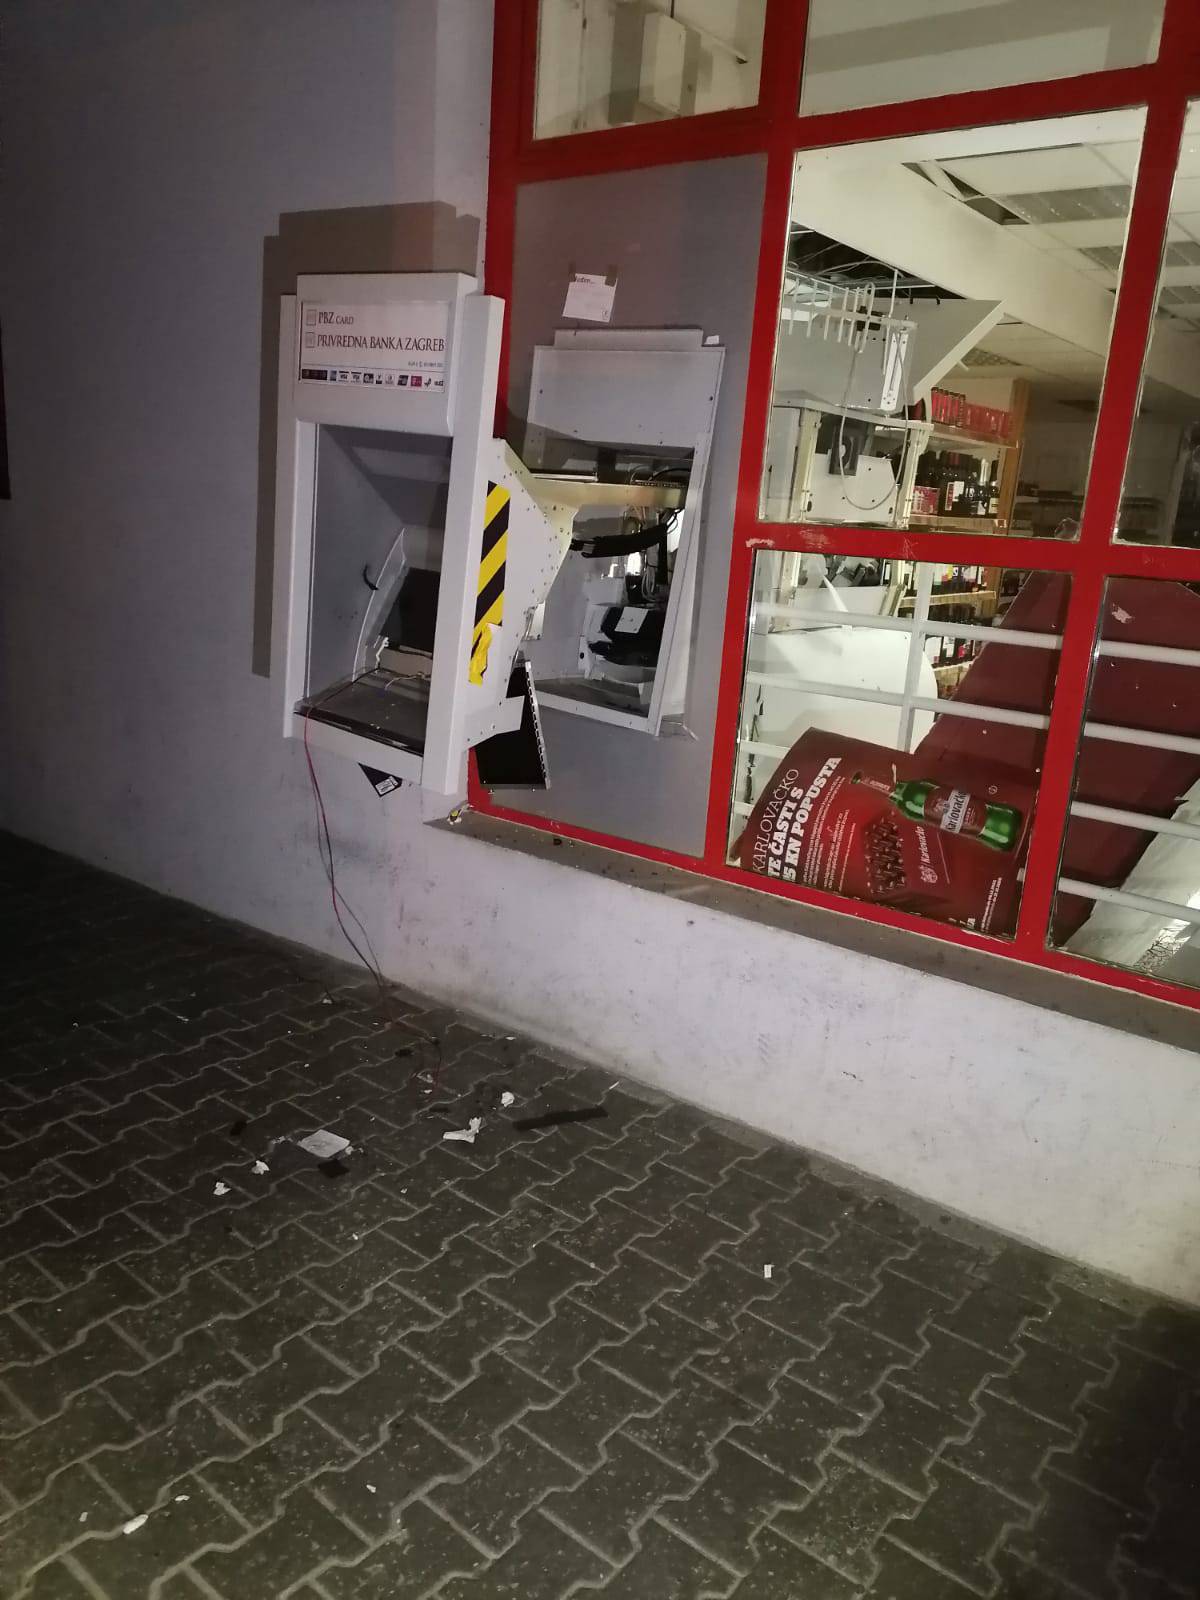 'Sina sam tjerala van, mislila sam da je potres': Razvalili bankomat i pobjegli s novcem